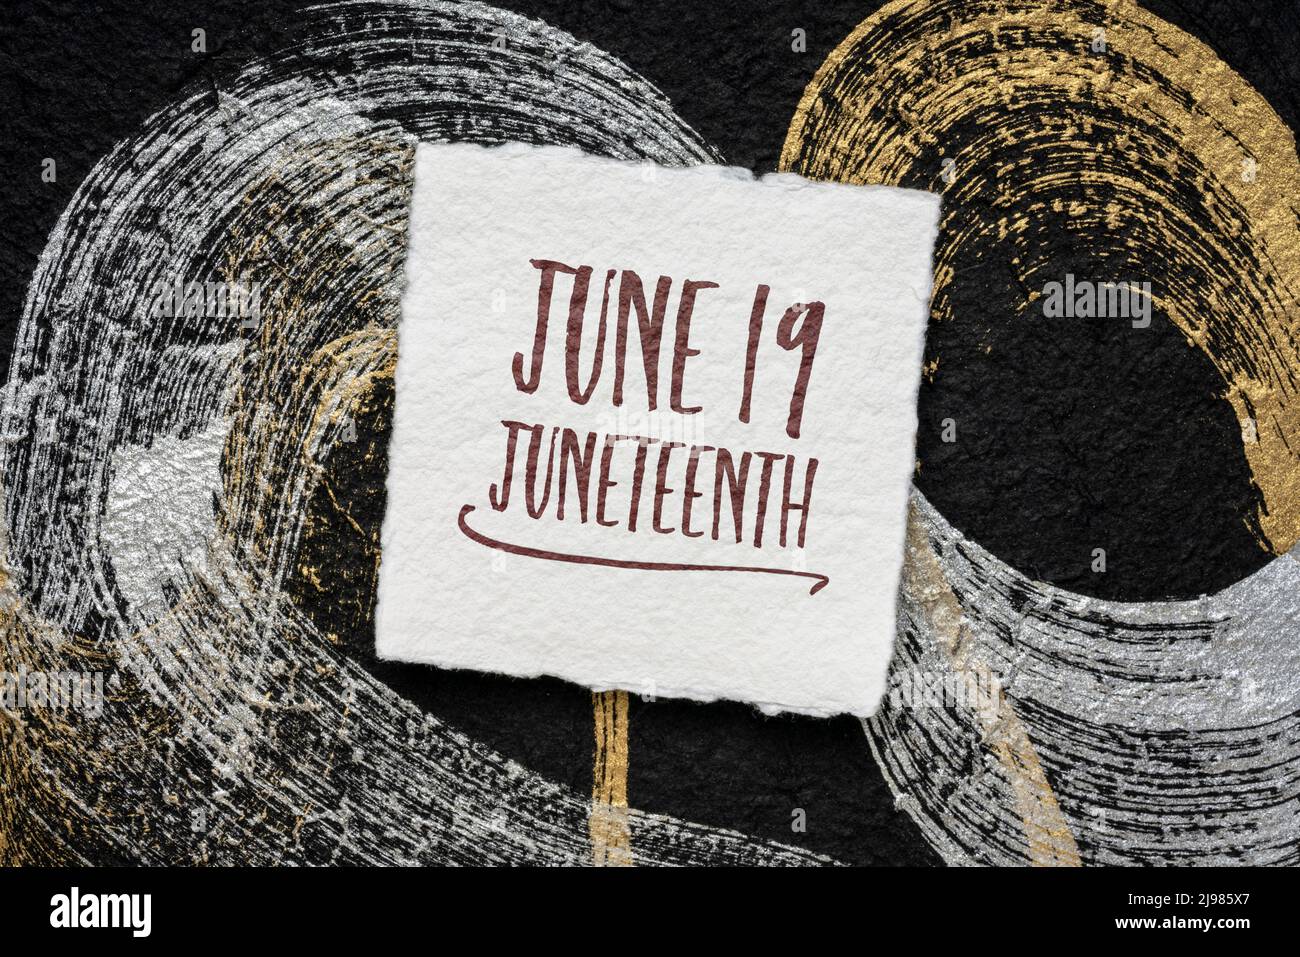 Juni 19 Juneteenth auch bekannt als Freedom Day, Jubilee Day, Liberation Day und Emancipation Day, Erinnerung Stockfoto